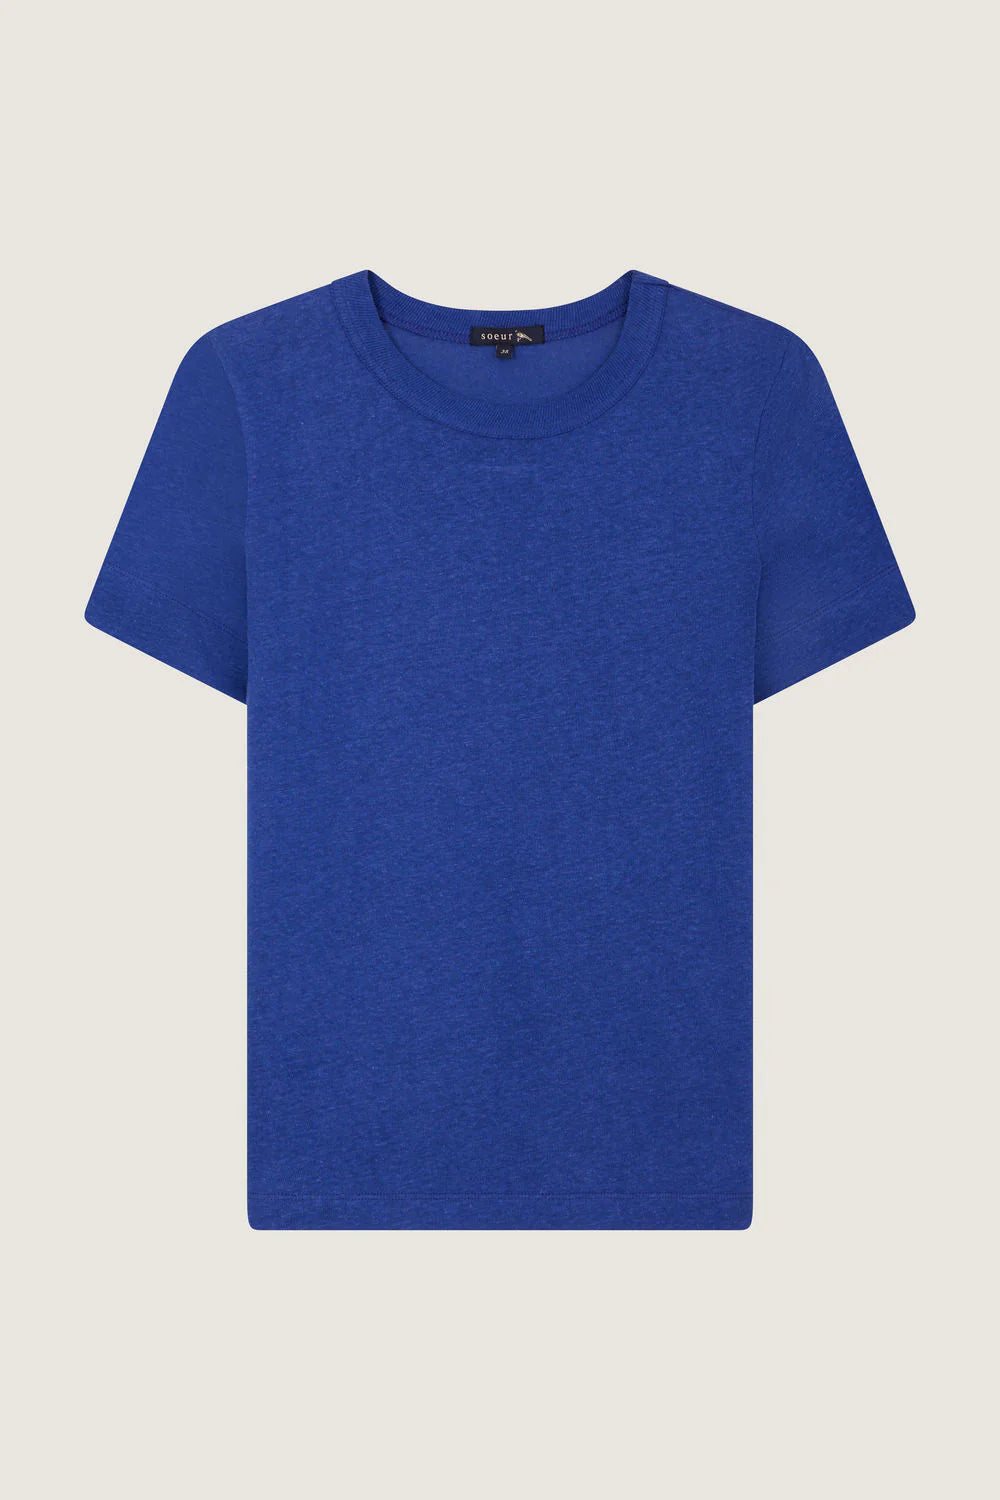 Tee-shirt Cyril Bleu - Soeur